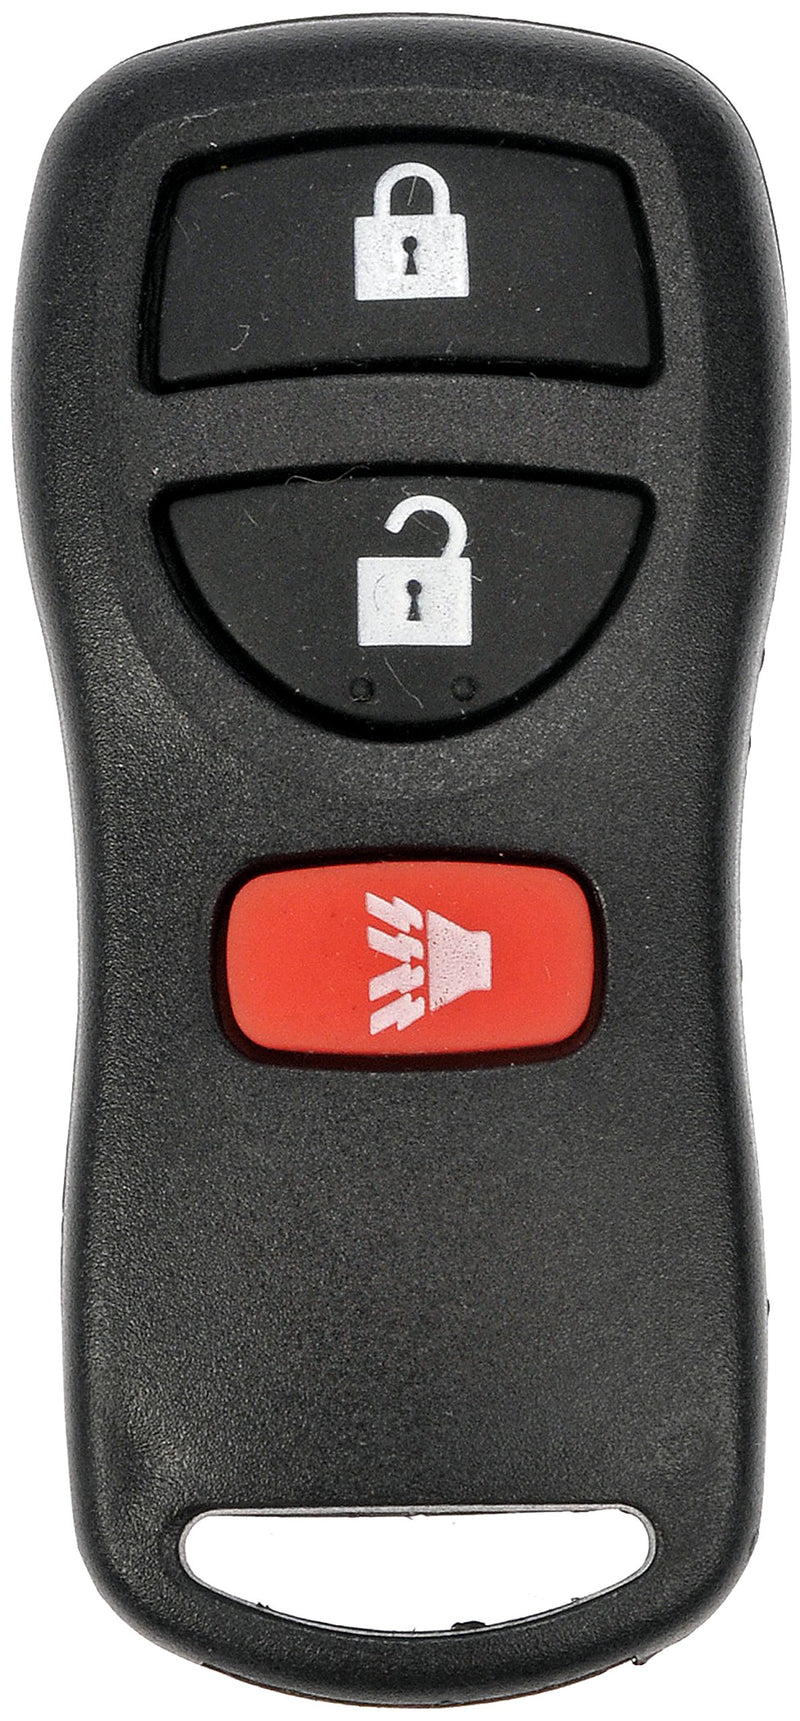  [AUSTRALIA] - Dorman 99131 Keyless Entry Transmitter for Select Infiniti/Nissan Models, Black